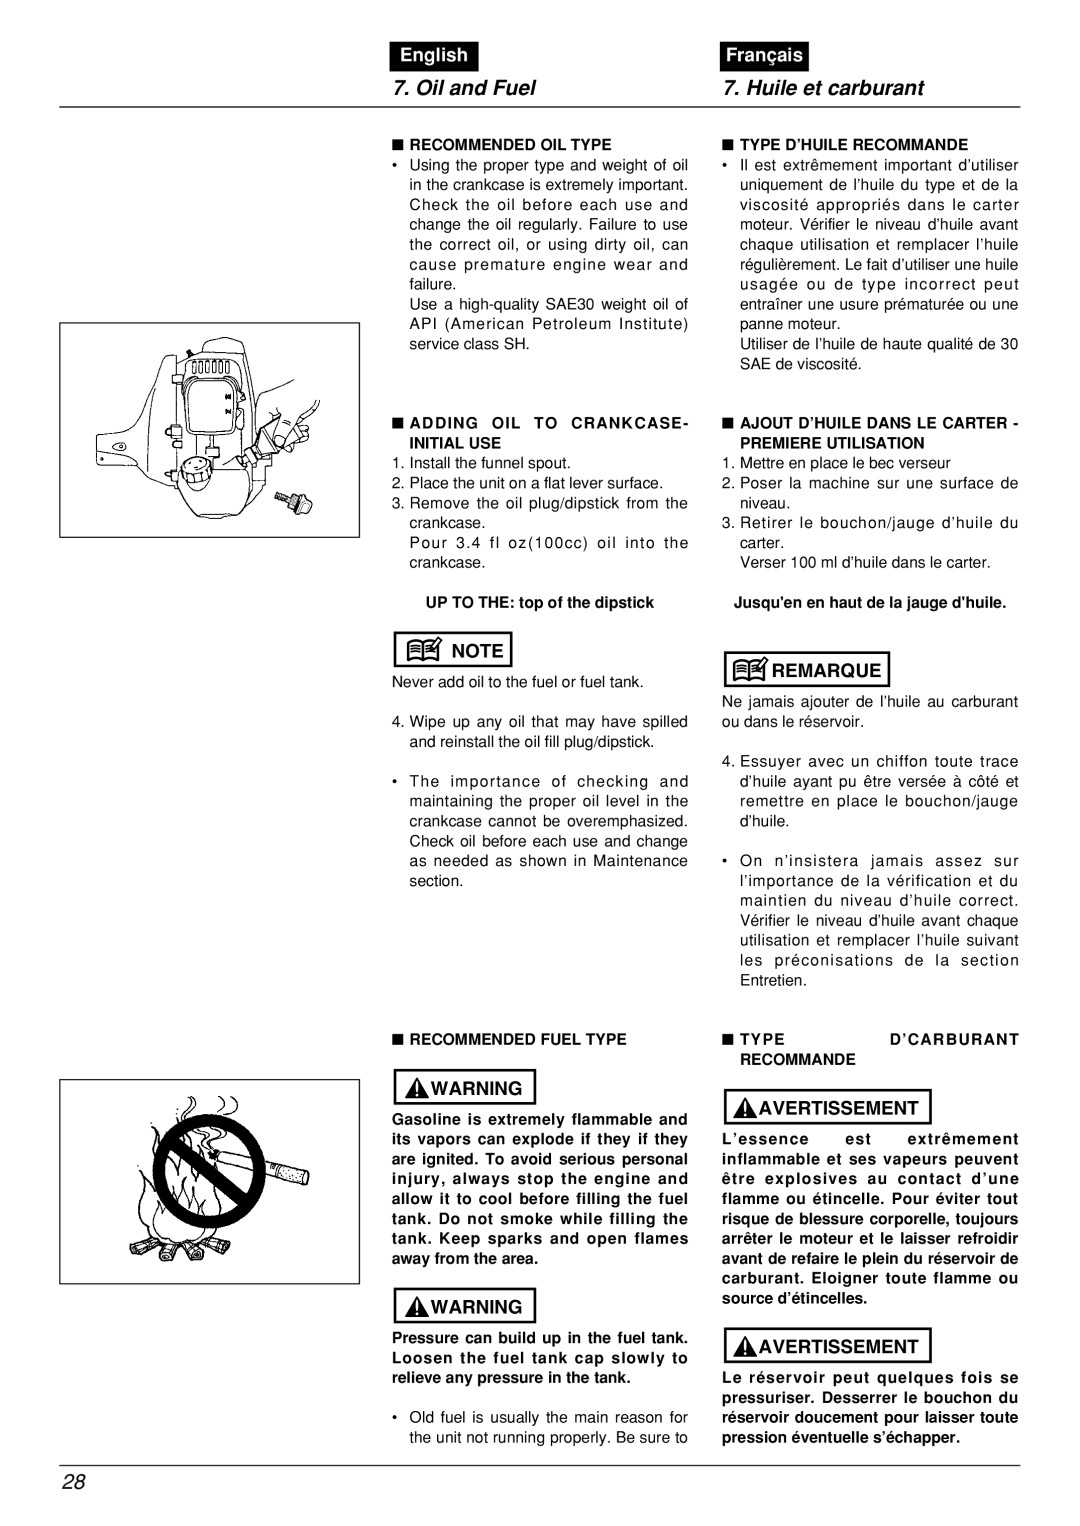 Zenoah BCX2601DL manual Oil and Fuel, Huile et carburant, English, Français 